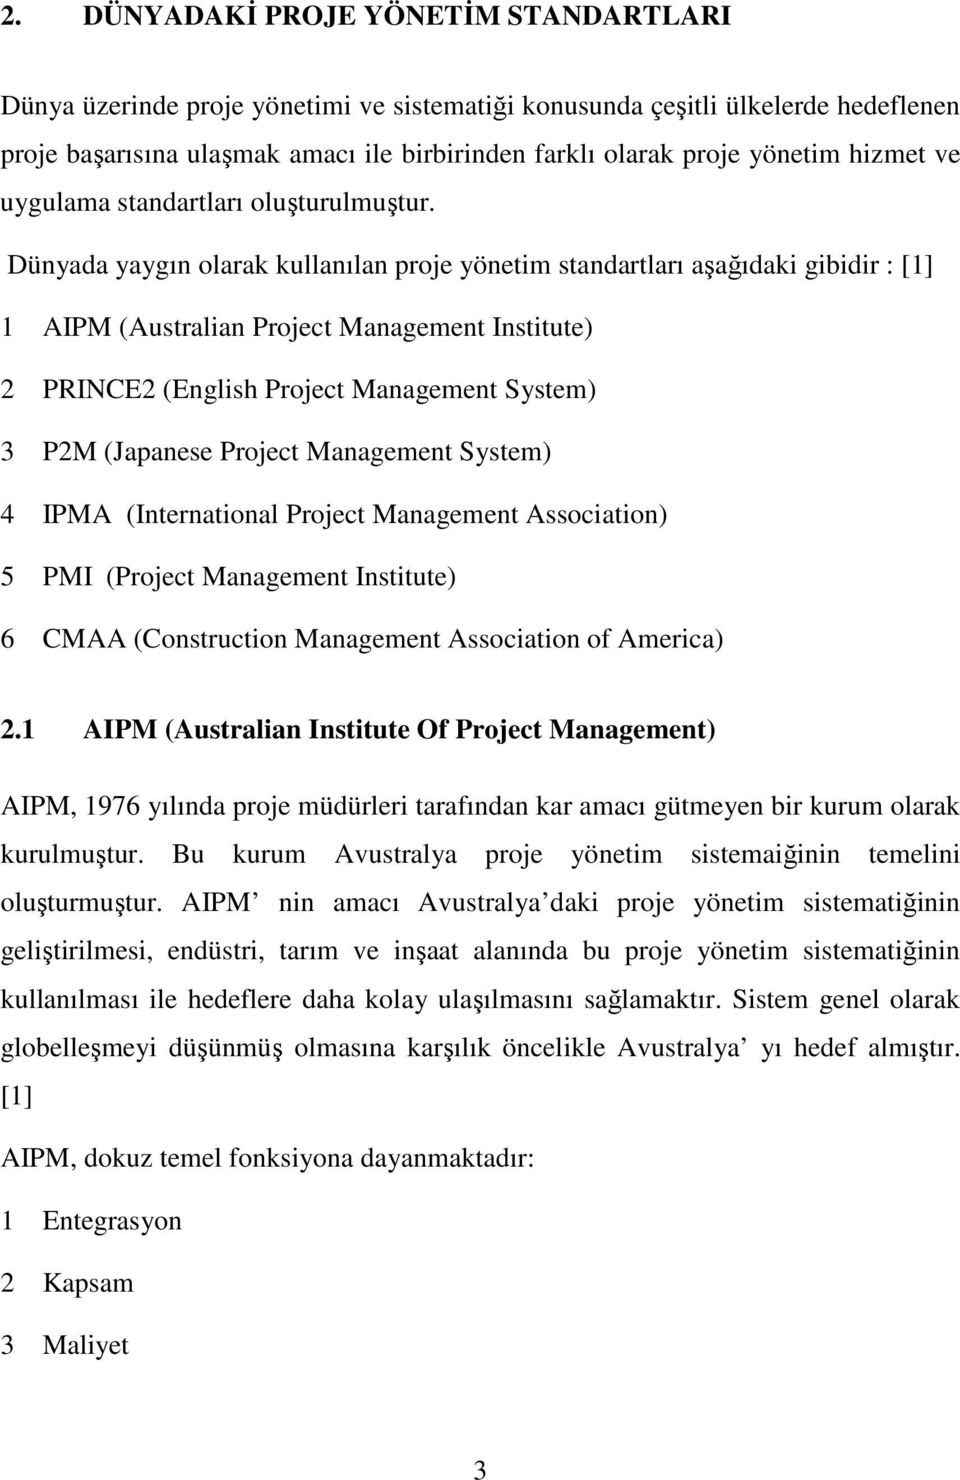 Dünyada yaygın olarak kullanılan proje yönetim standartları aşağıdaki gibidir : [1] 1 AIPM (Australian Project Management Institute) 2 PRINCE2 (English Project Management System) 3 P2M (Japanese